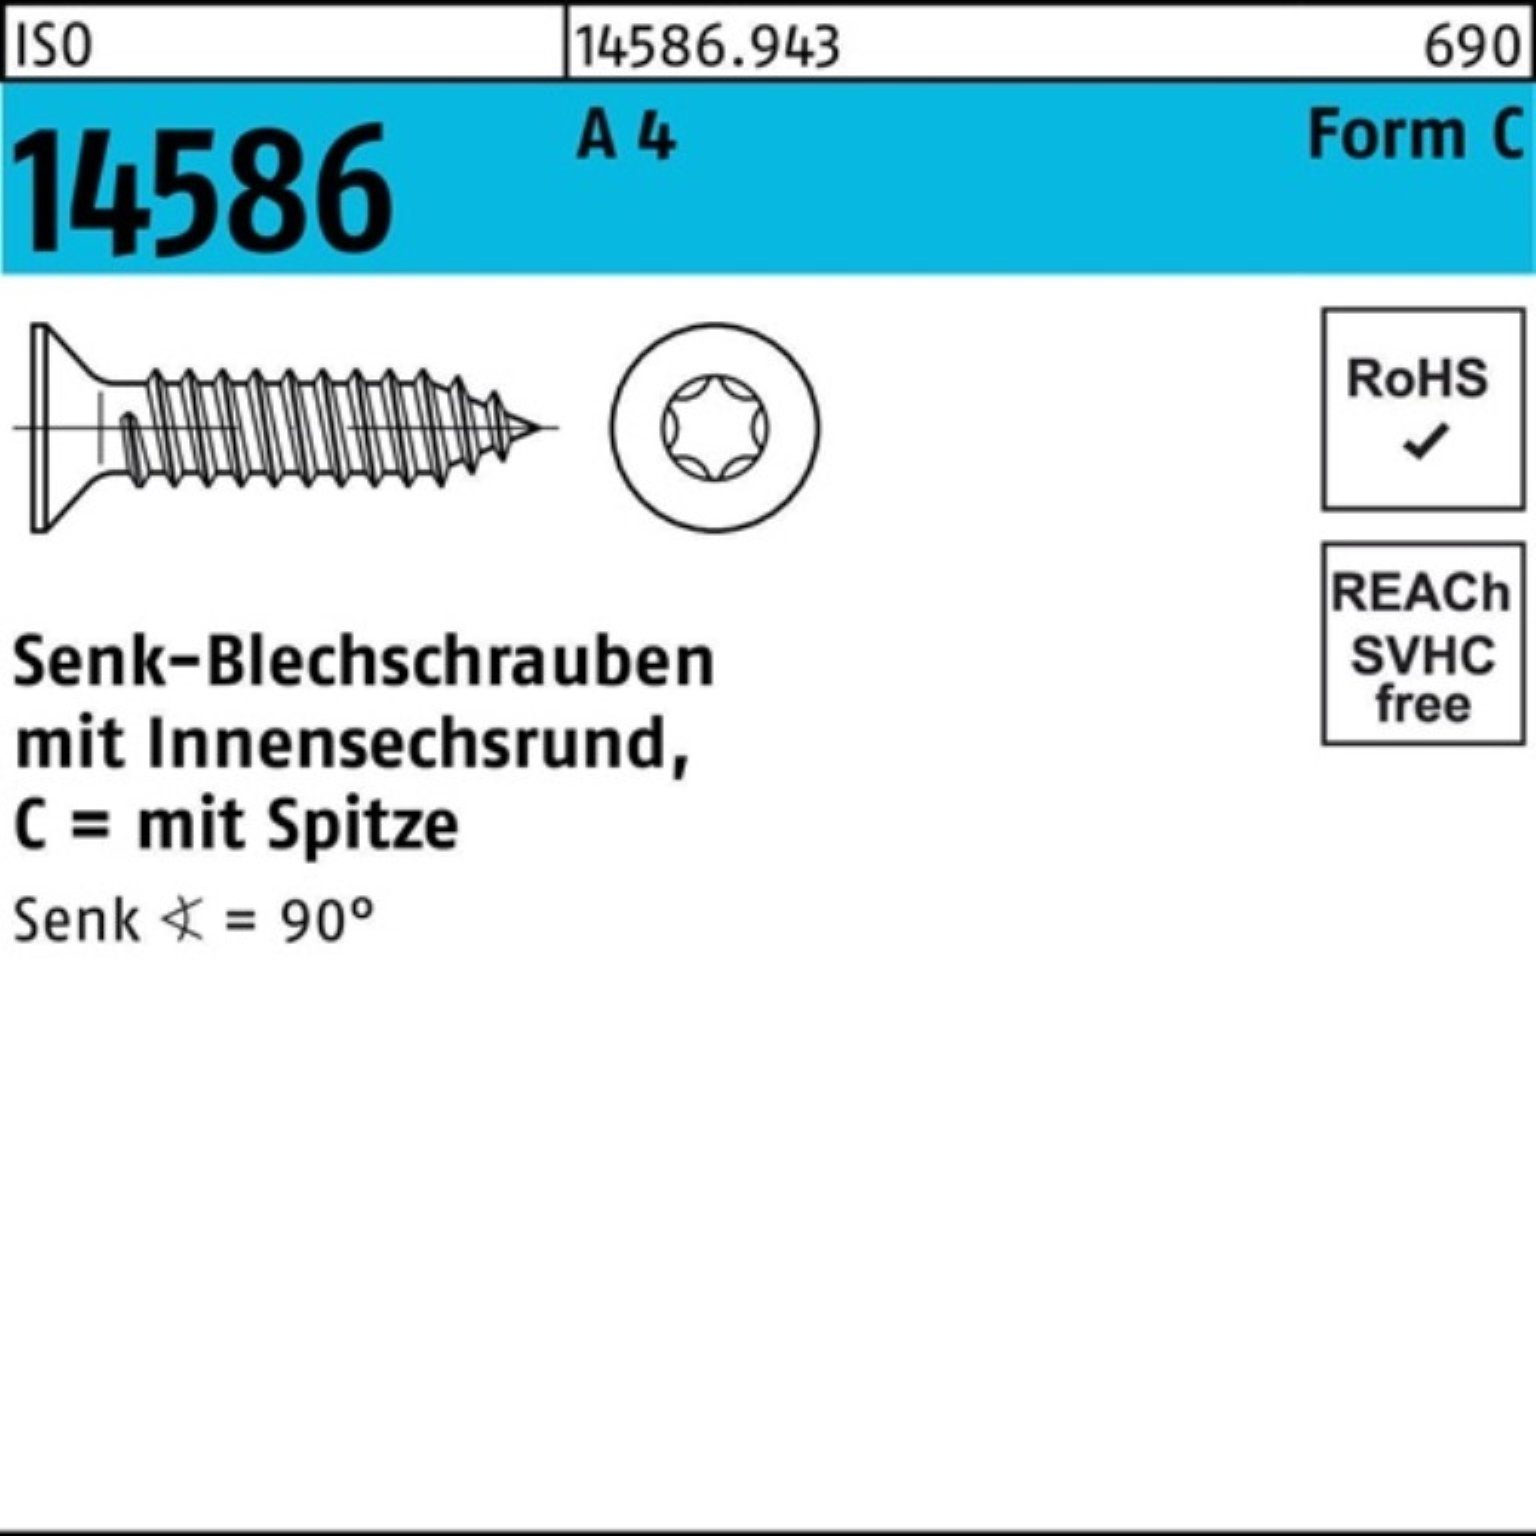 Reyher Schraube 3,9x ISO Senkblechschraube Pack 19-T15 ISR/Spitze 1000er 14586 4 A 100